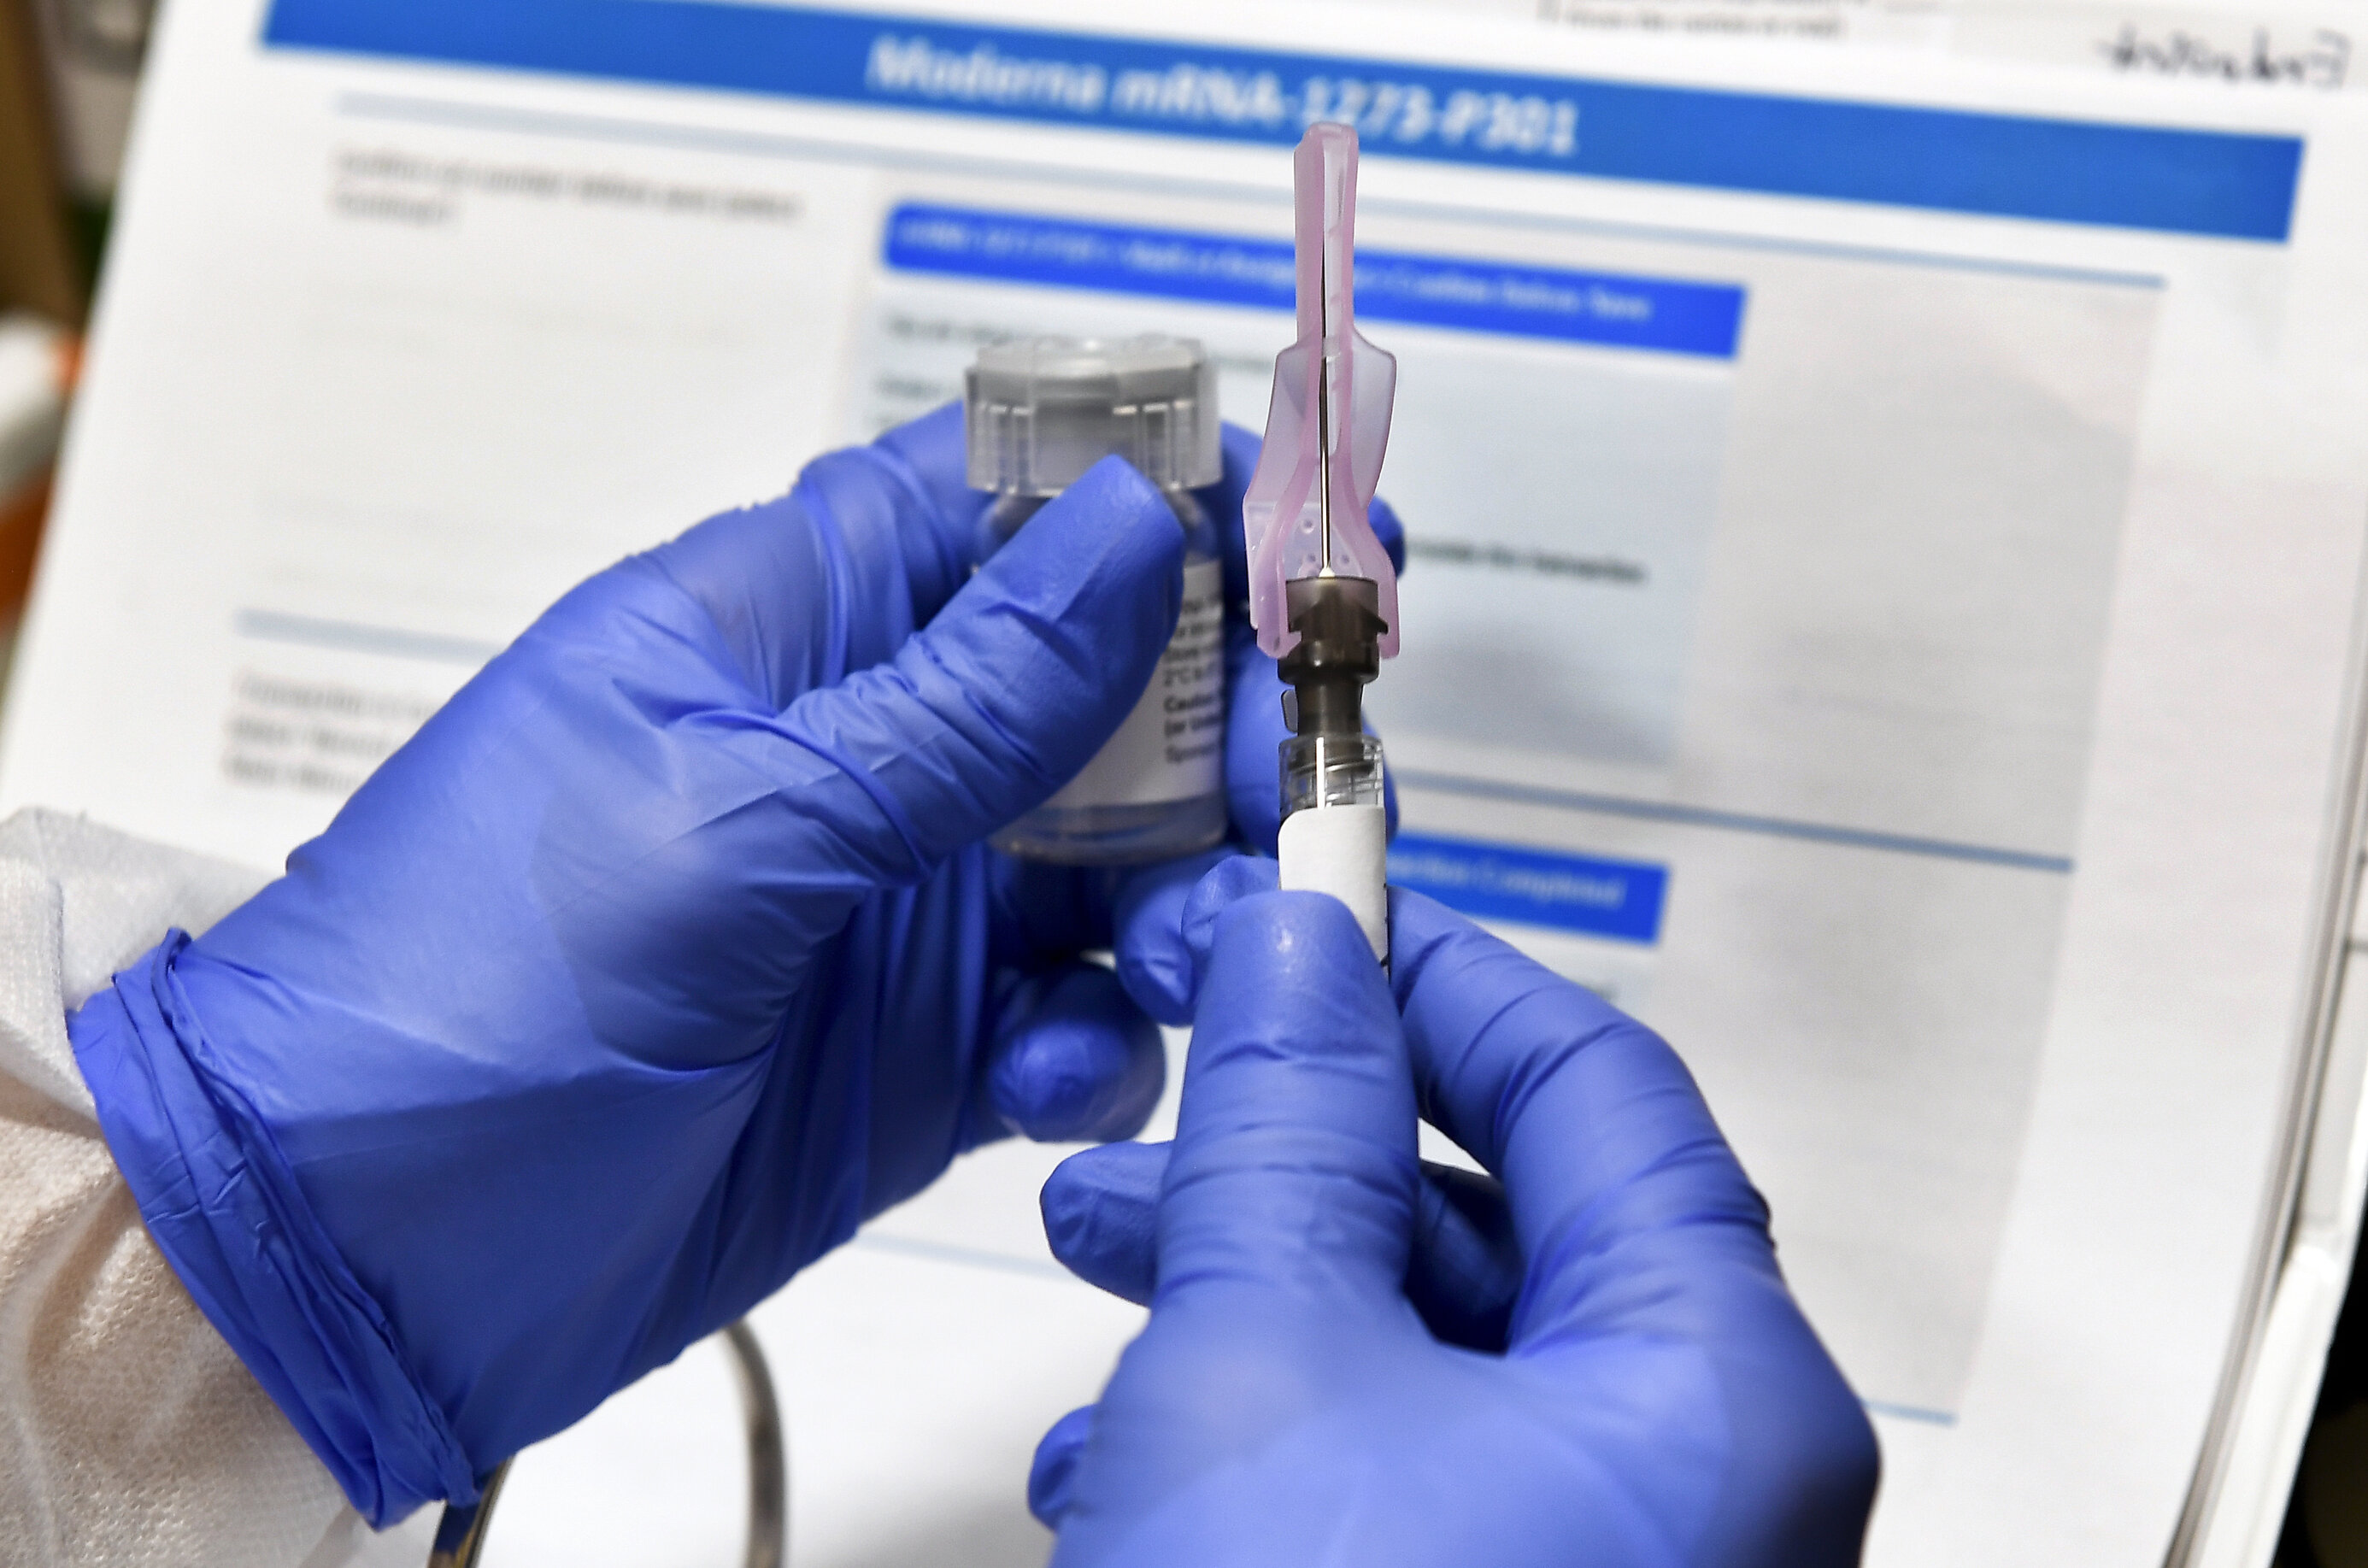 Laboratoarele Moderna și Pfizer publică protocoalele studiilor clinice pentru a diminua reticența cetățenilor la vaccinare